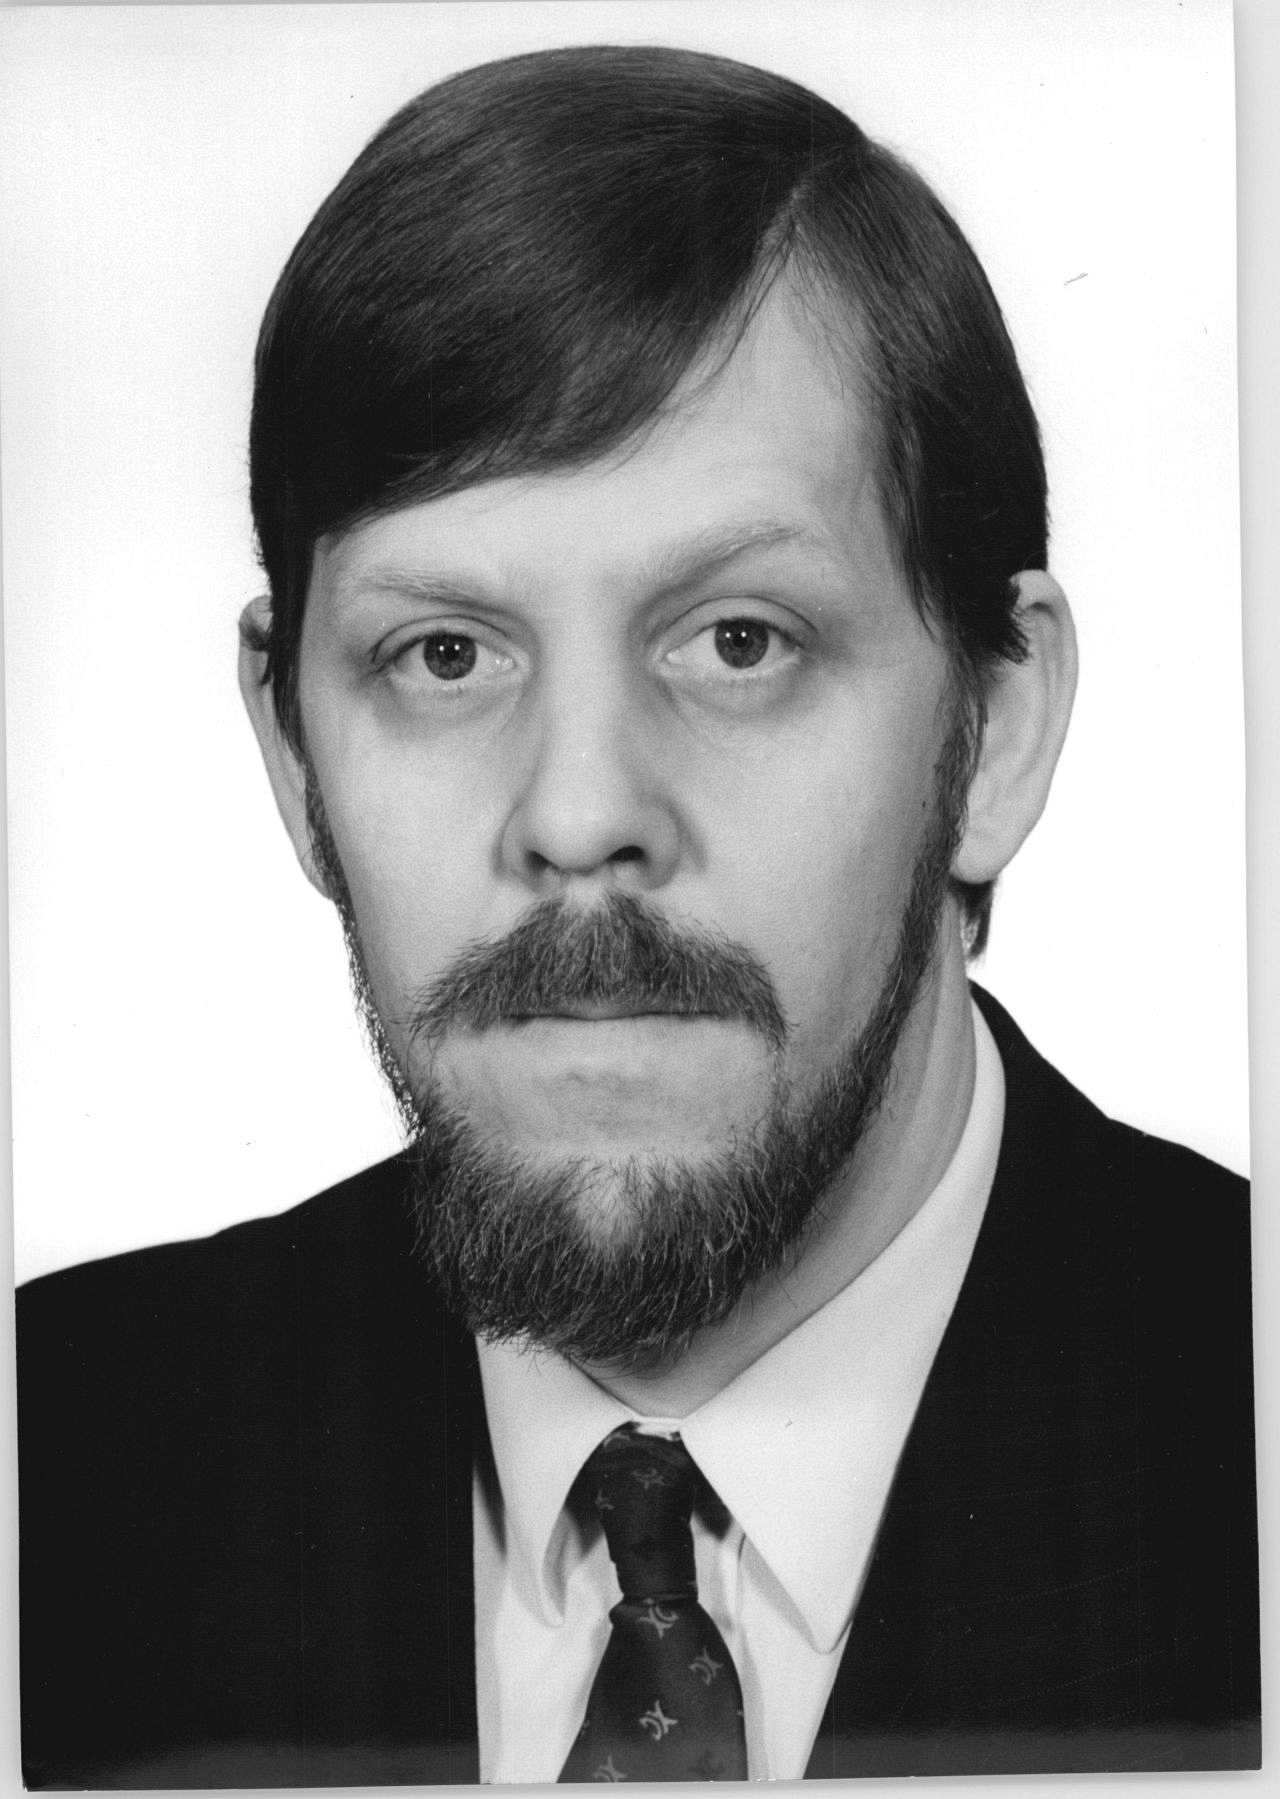 Porträtfoto von Martin Gutzeit, DDR-Oppositioneller und Geistlicher, 1990.